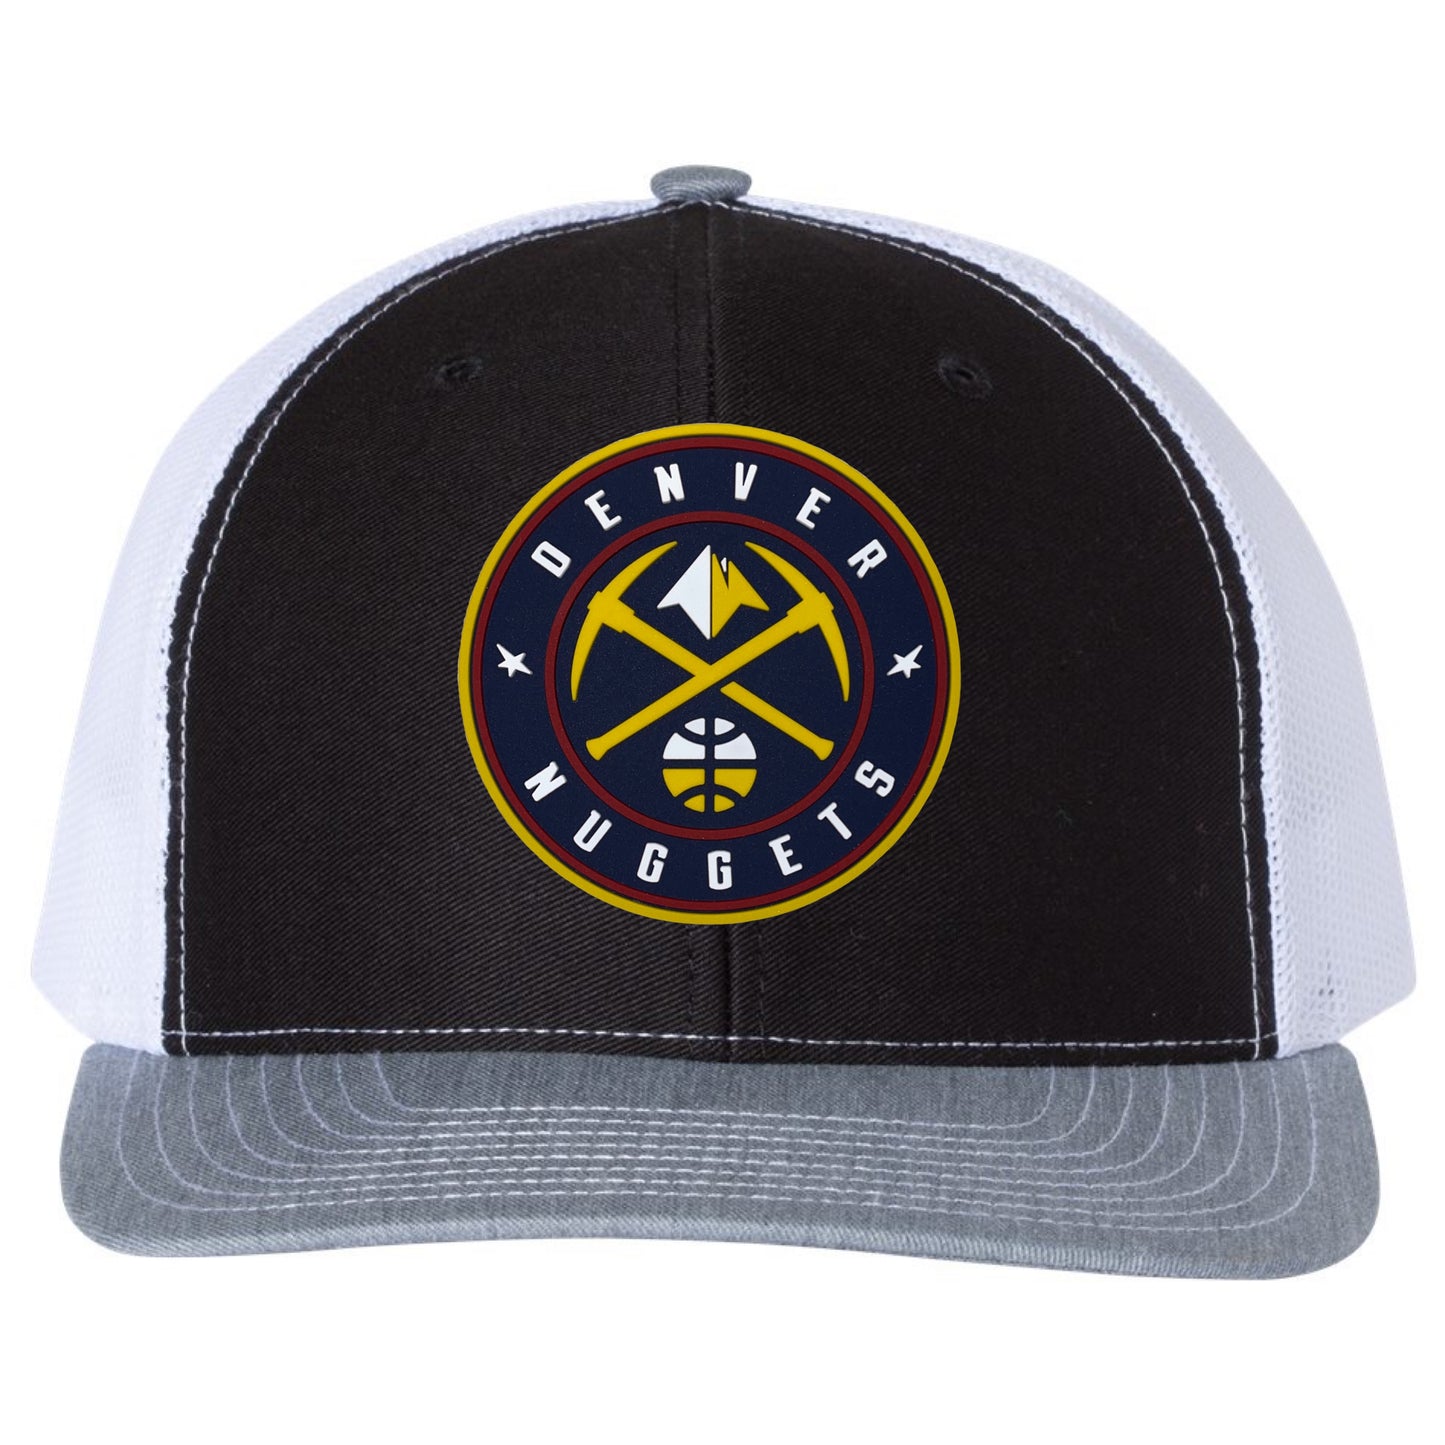 Denver Nuggets 3D PVC Rubber Patch Hat- Black/ White/ Heather Grey - Ten Gallon Hat Co.